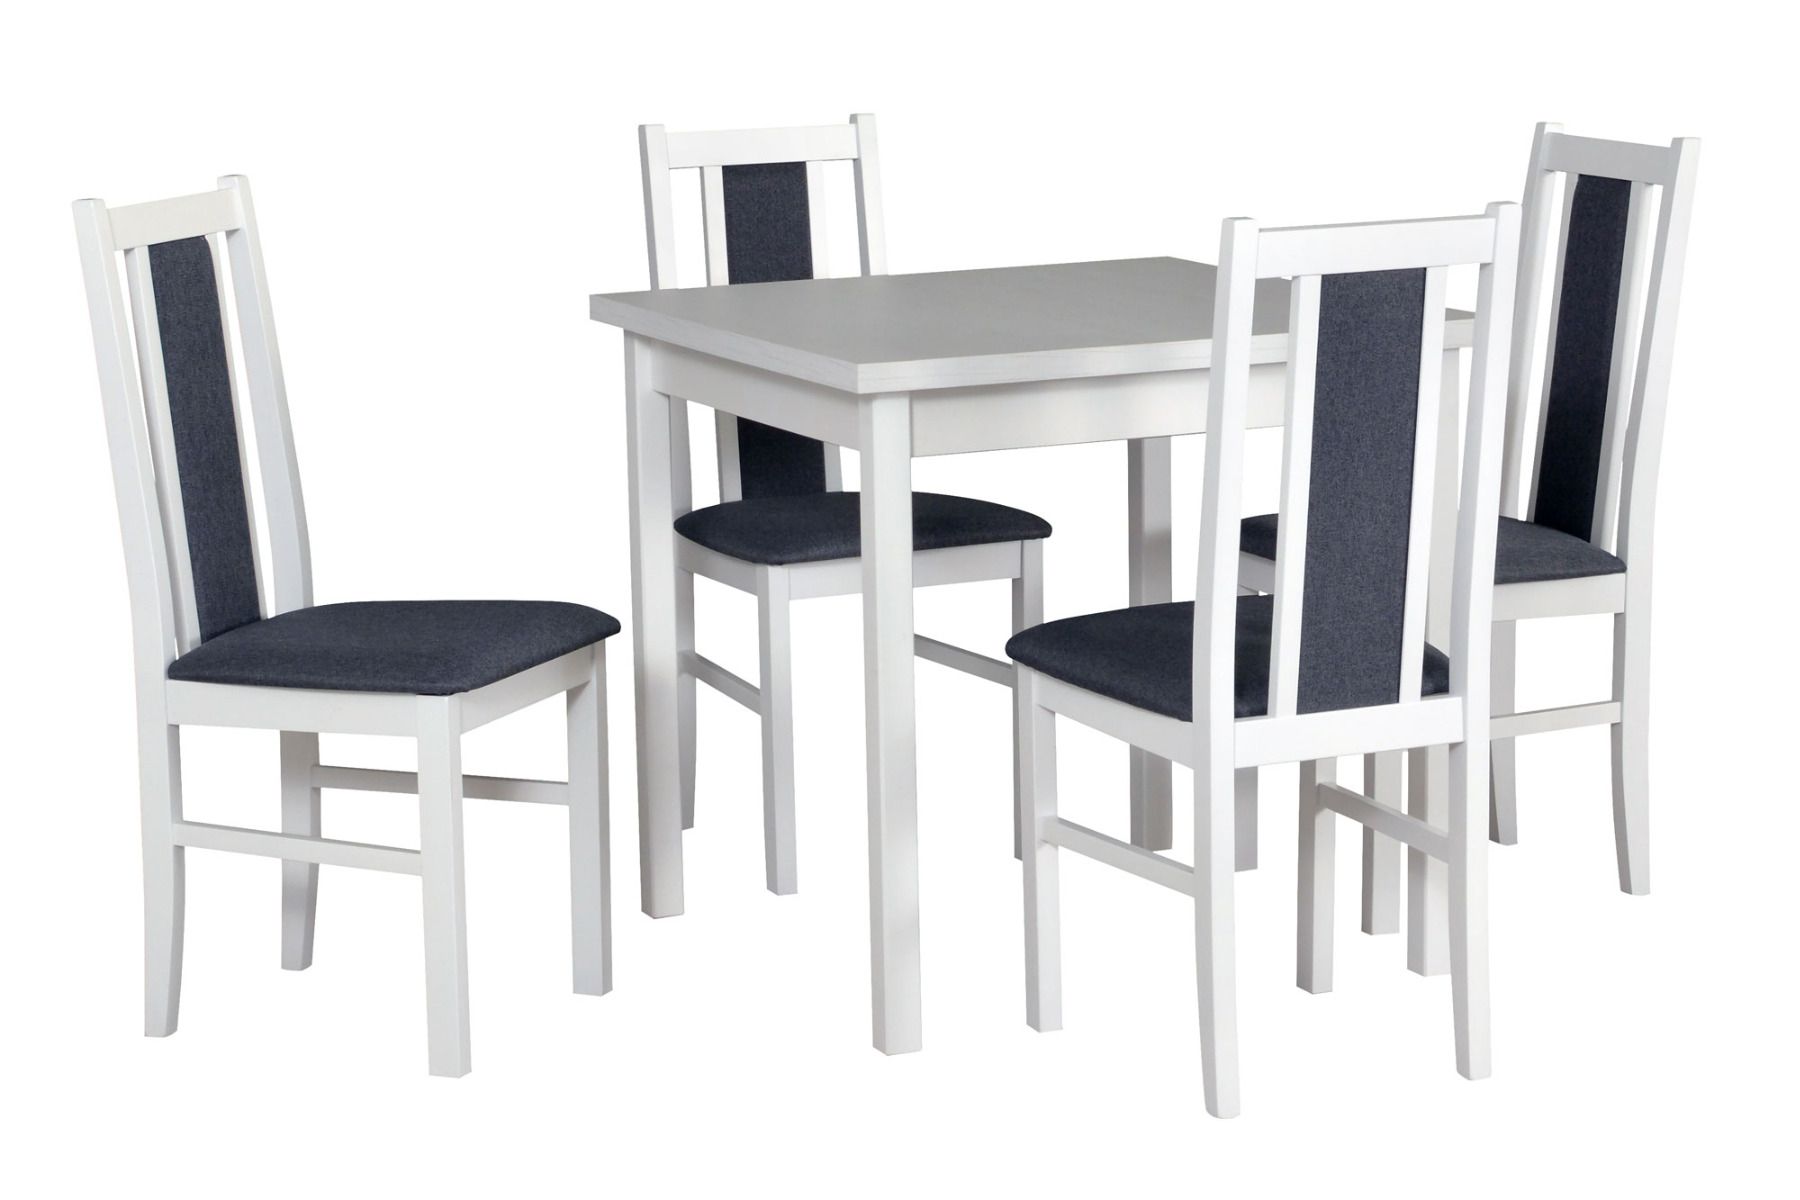 Esszimmer Komplett - Set M, 5 - teilig, Holzfarbe: Weiß, robustes Holz, bequeme und weiche Polsterung der Sitzfläche, modernes Design, Laminatplatte